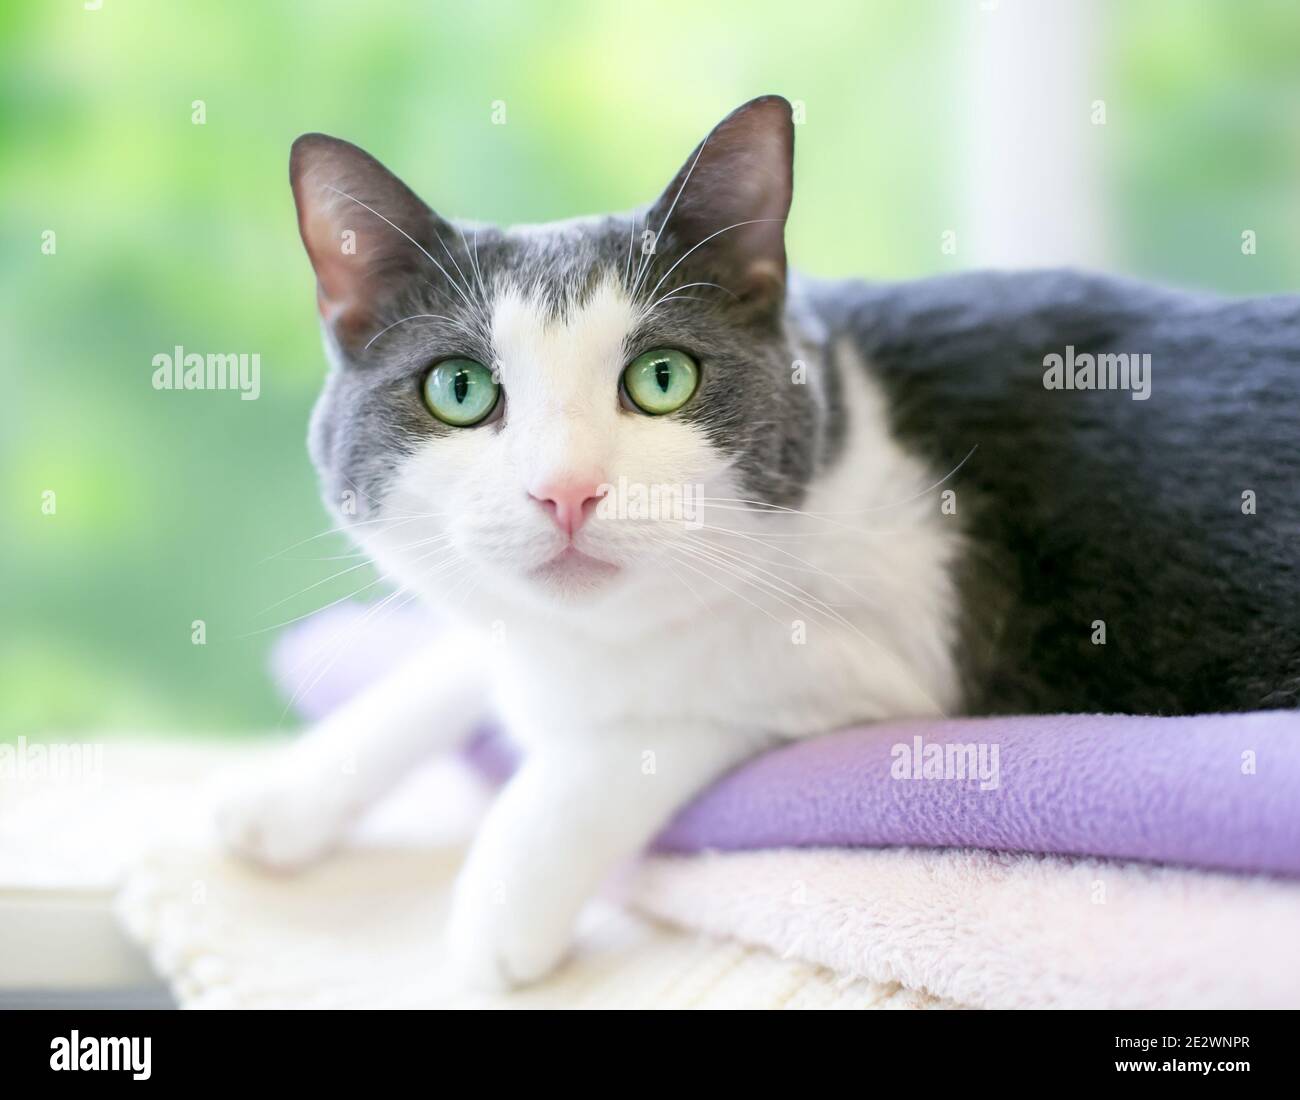 Eine grau-weiße Kurzhaarkatze mit grünen Augen liegend Auf einer Decke und auf die Kamera schauen Stockfoto